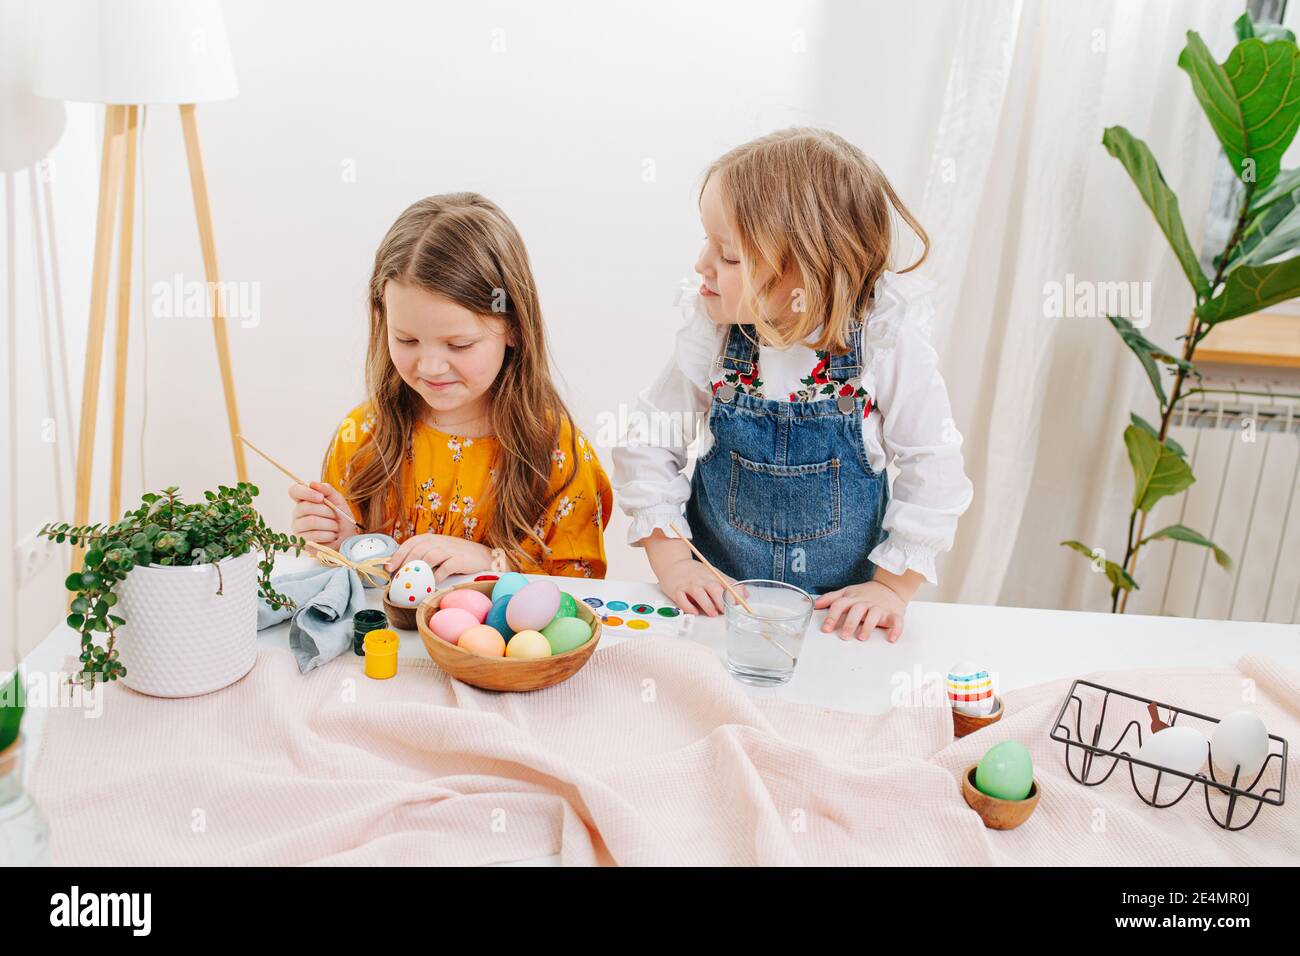 Deux petites filles peignent des œufs de pâques derrière une table Banque D'Images